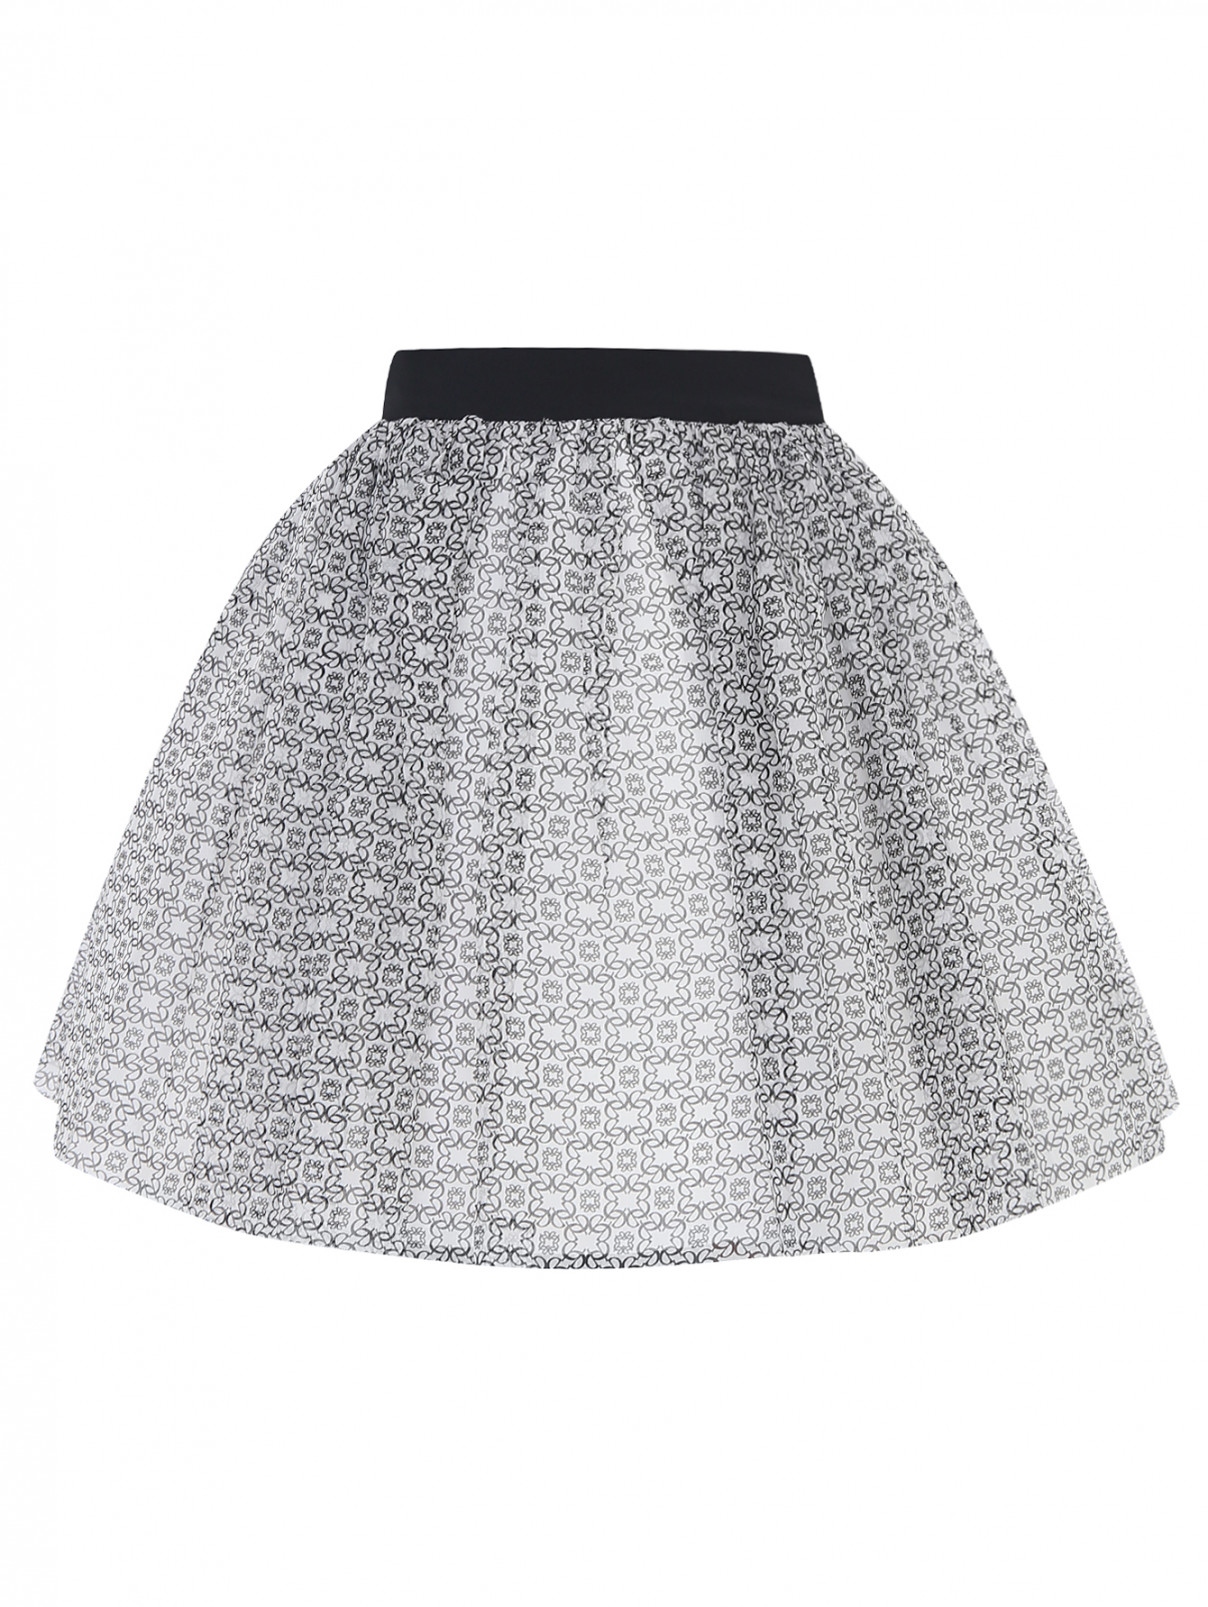 Шелковая юбка с узором Elie Saab  –  Общий вид  – Цвет:  Белый